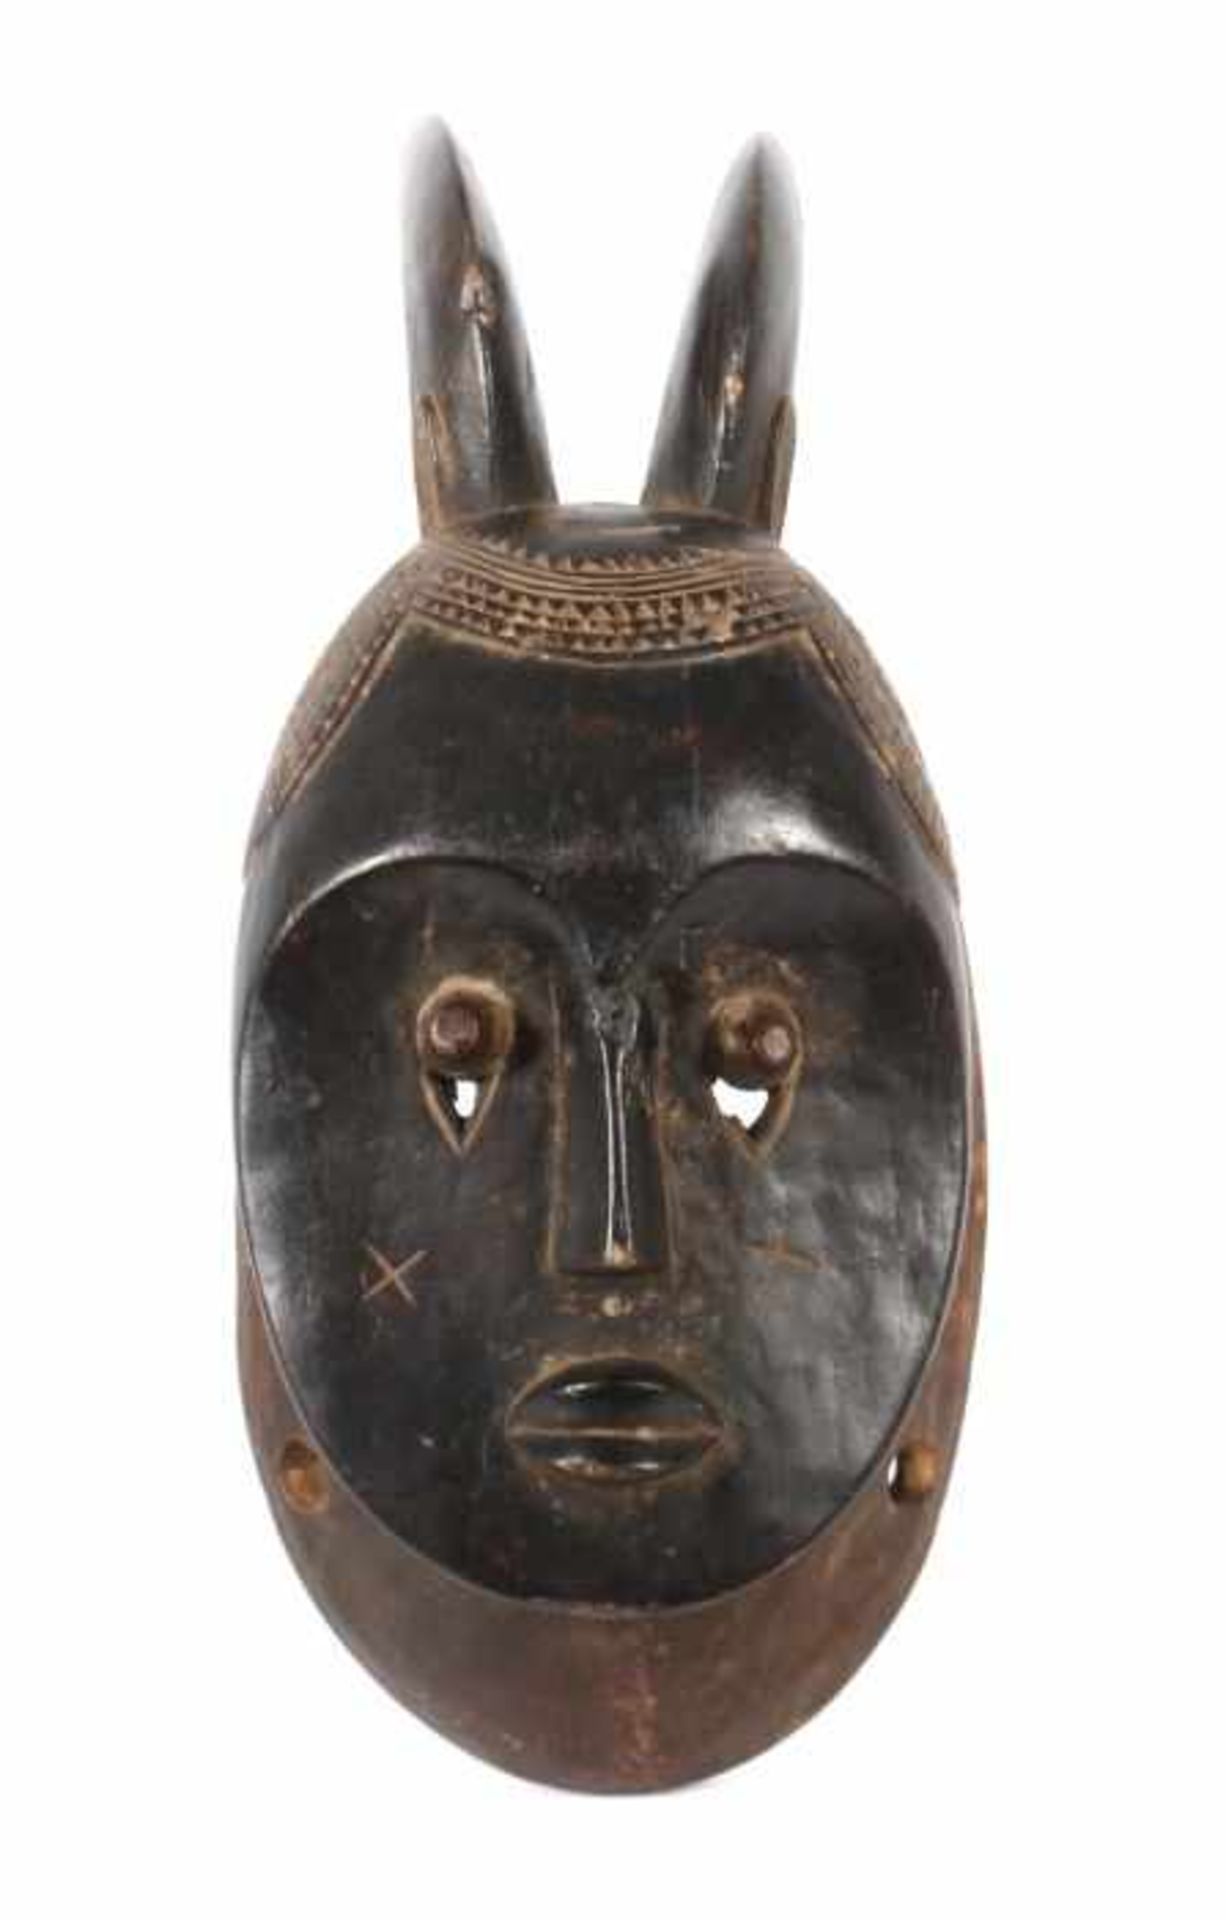 Maske der Goli Maskerade Elfenbeinküste, Stamm der Baule, Holz, das flache Gesichtsfeld mit